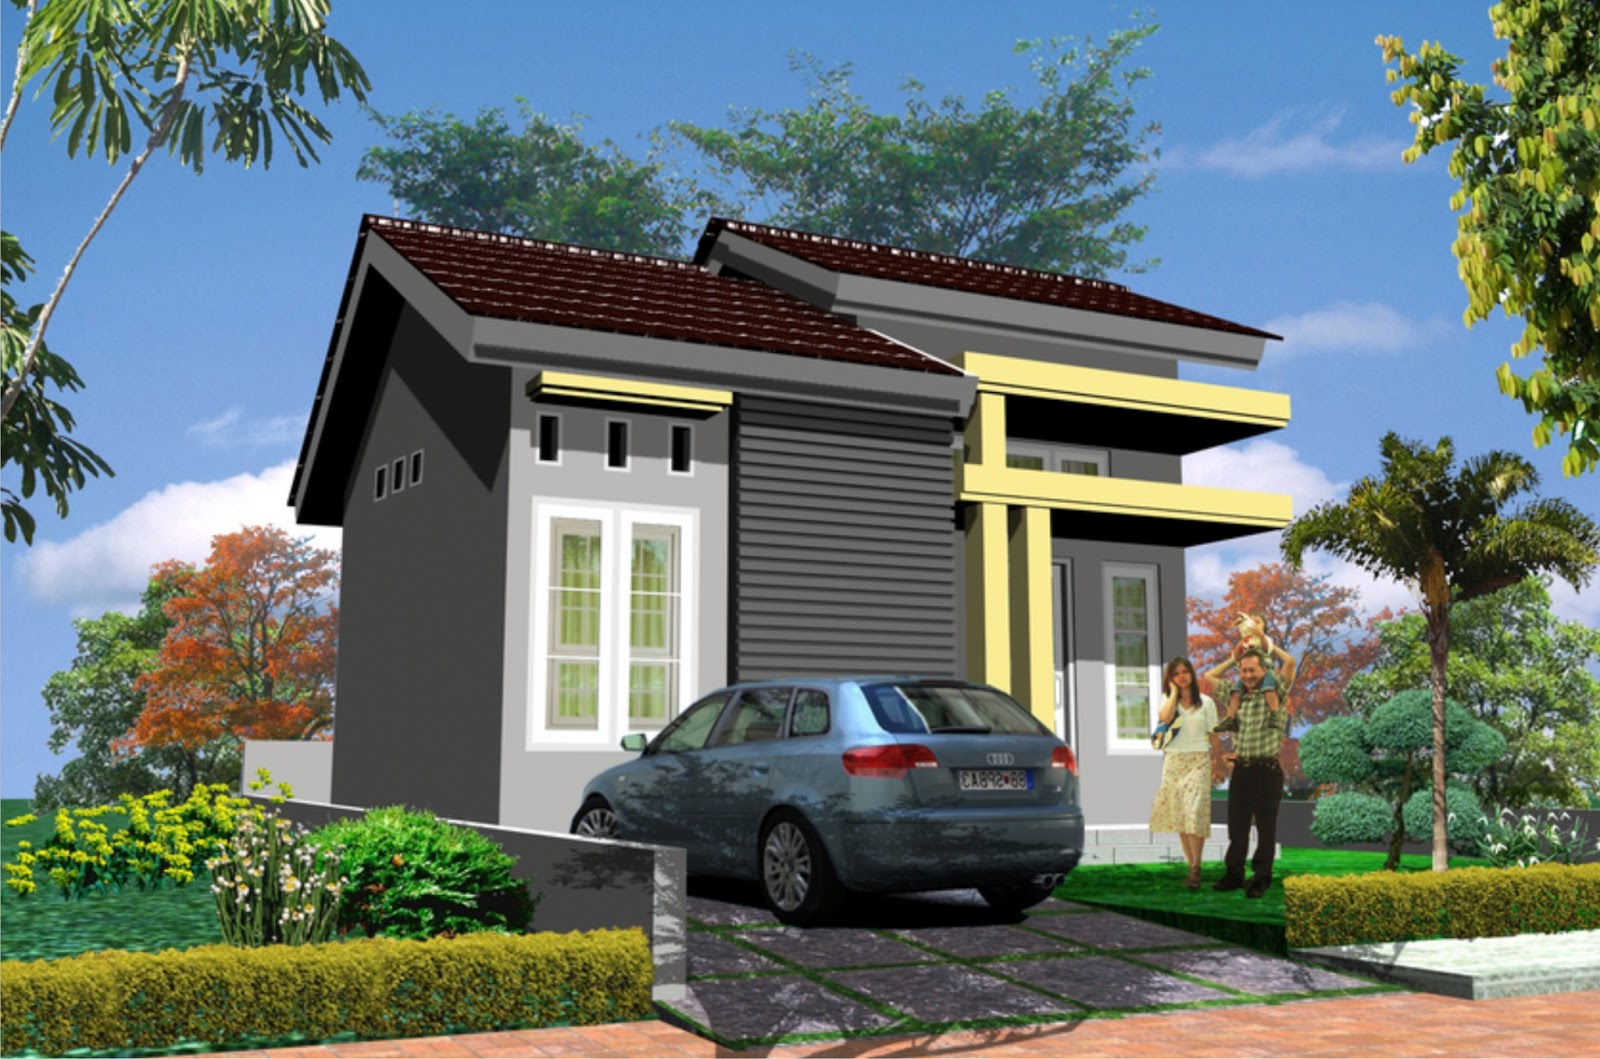 67 Desain Rumah Minimalis Gaya Turki Desain Rumah Minimalis Terbaru